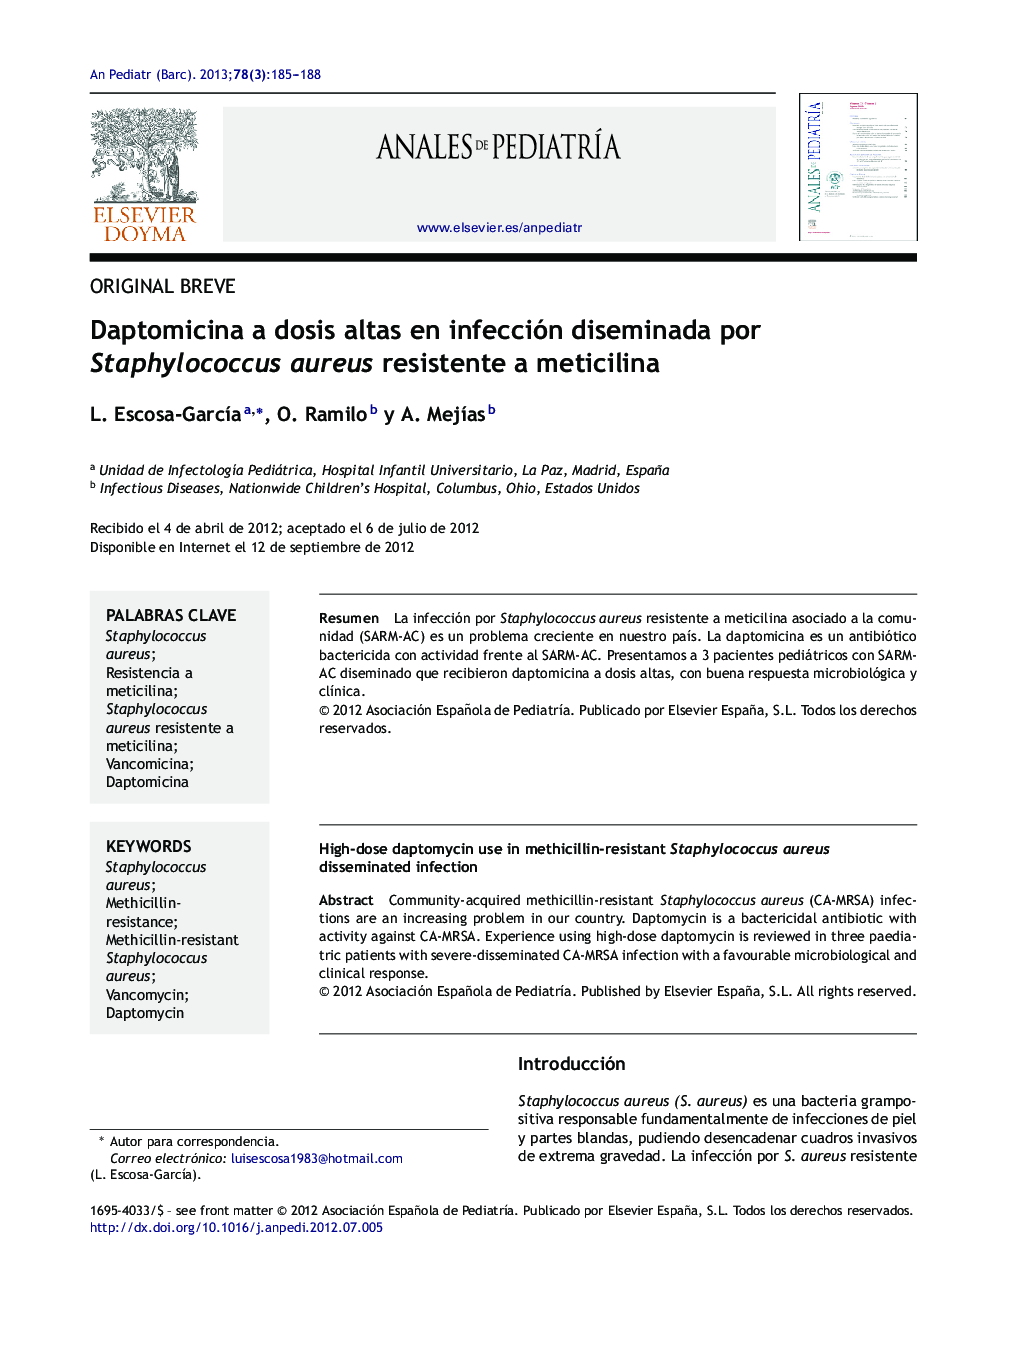 Daptomicina a dosis altas en infección diseminada por Staphylococcus aureus resistente a meticilina